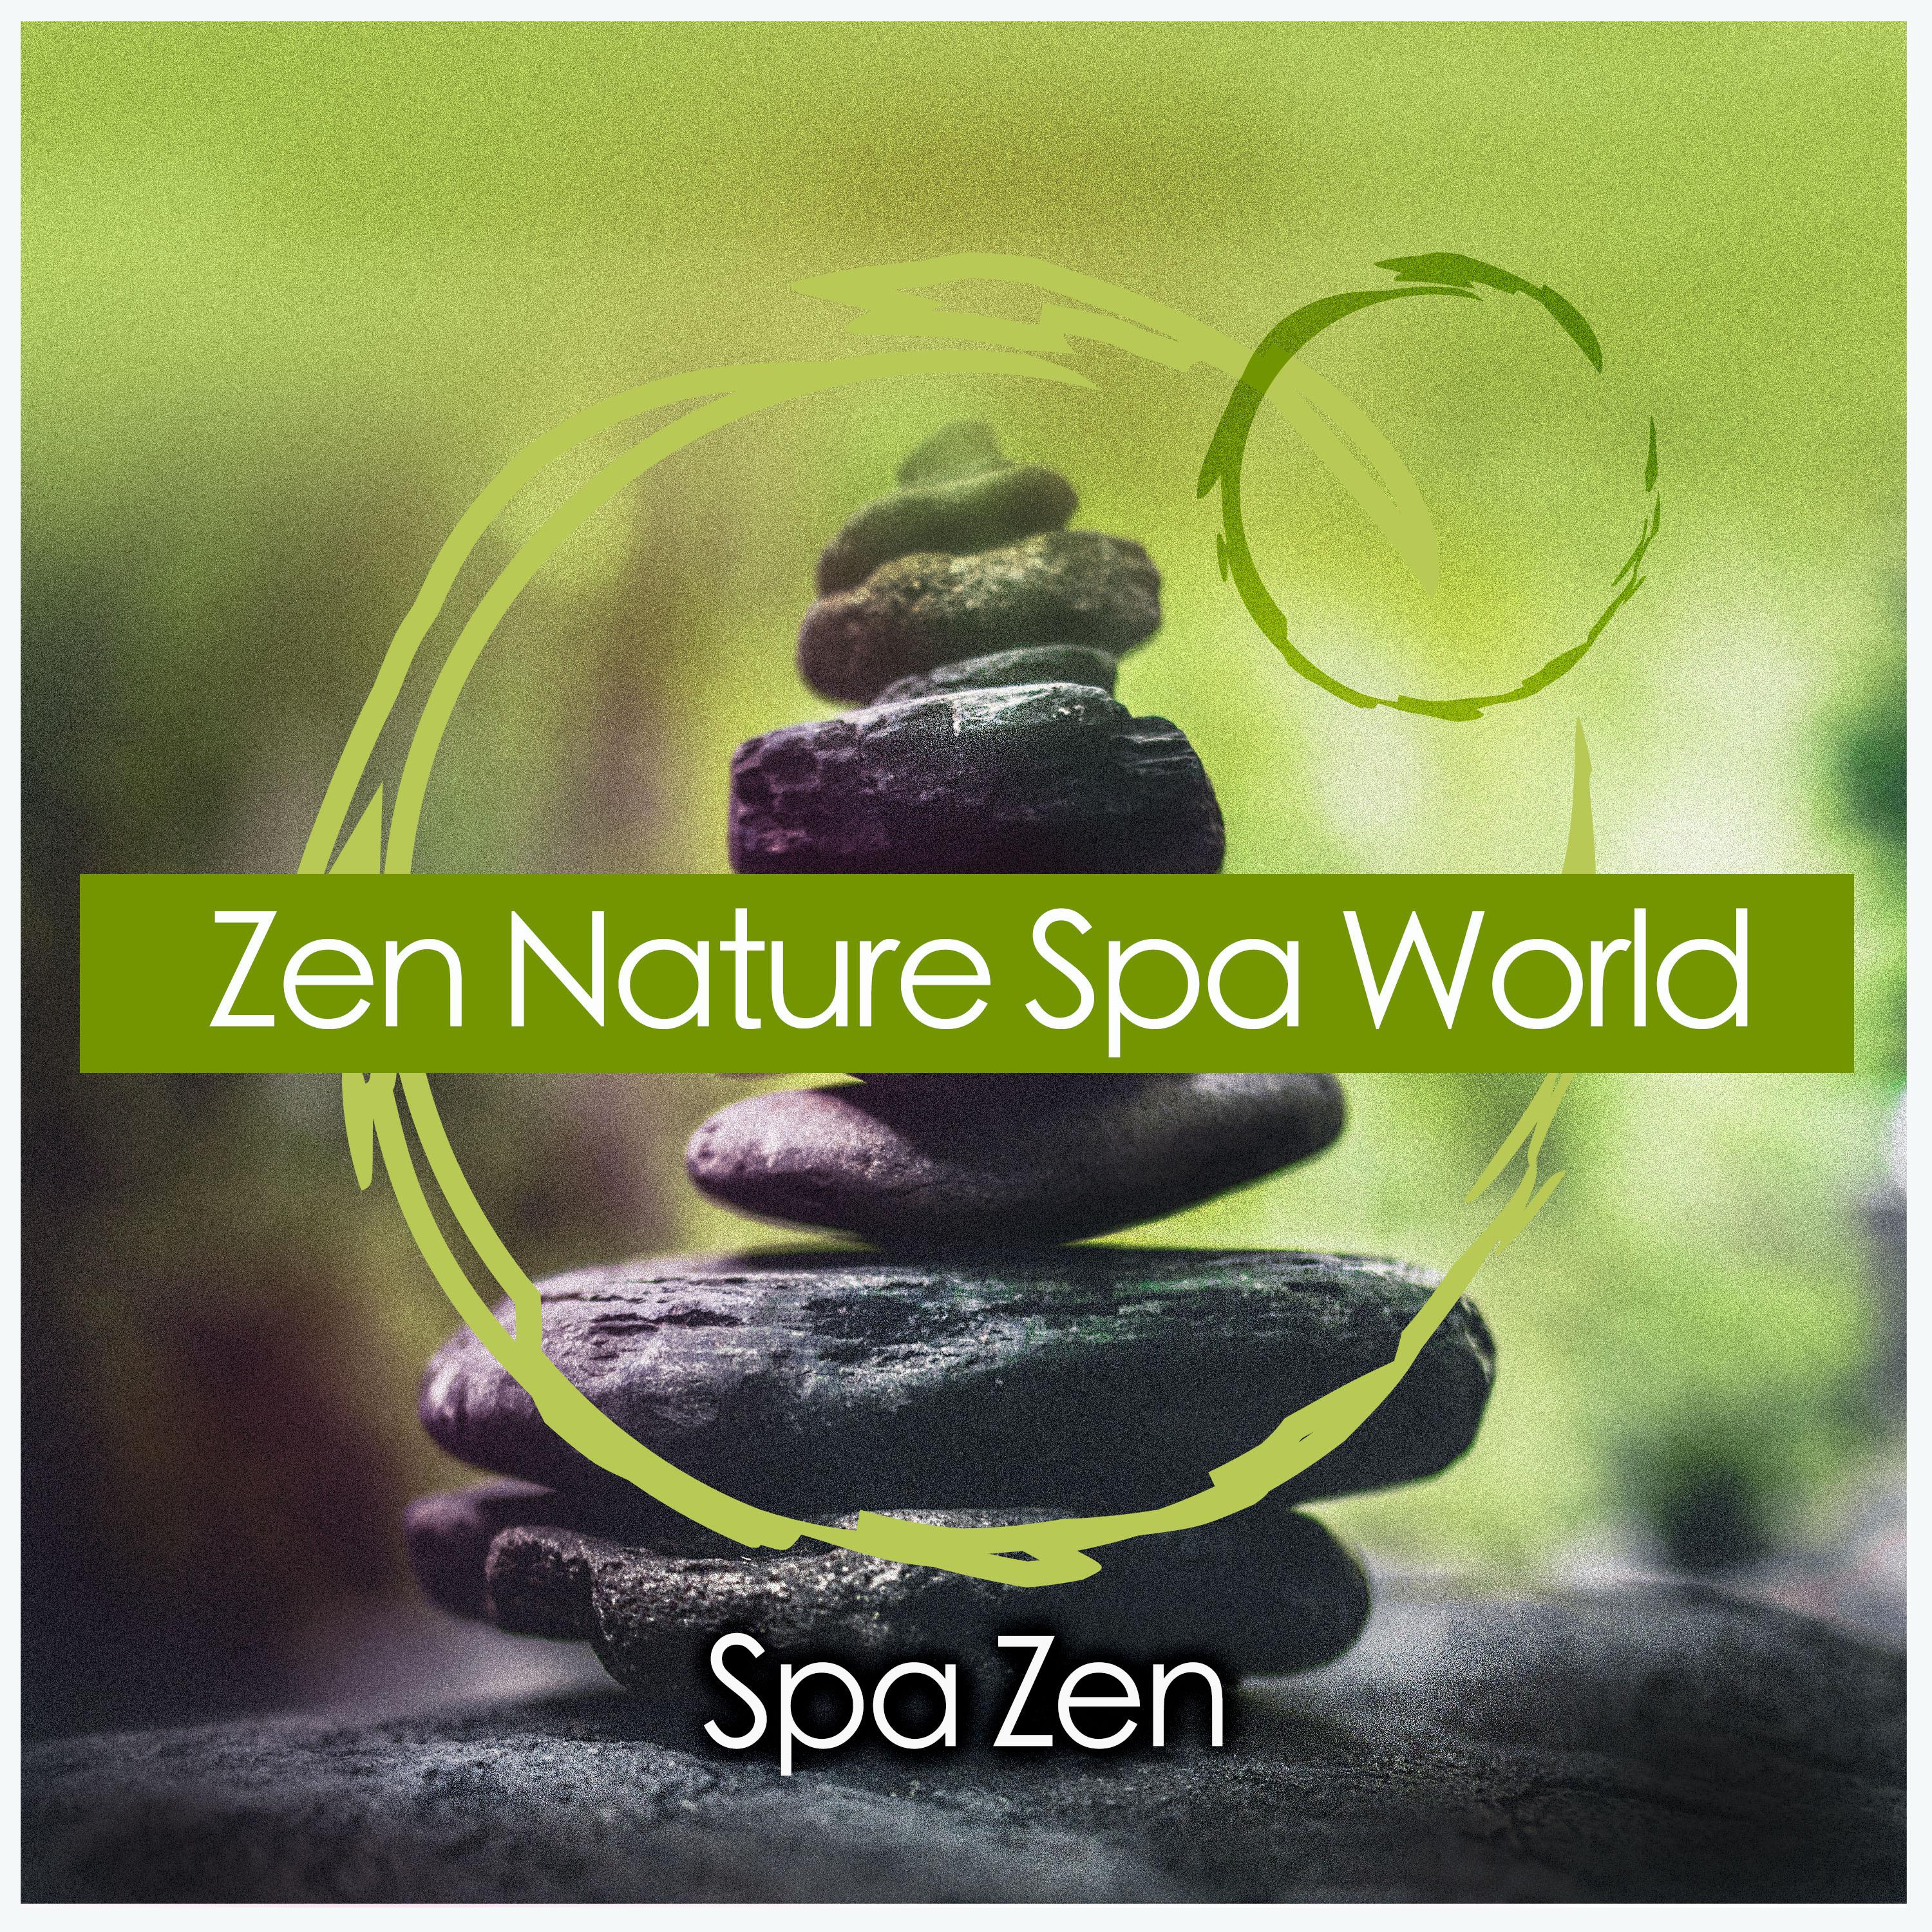 Zen Nature Spa World